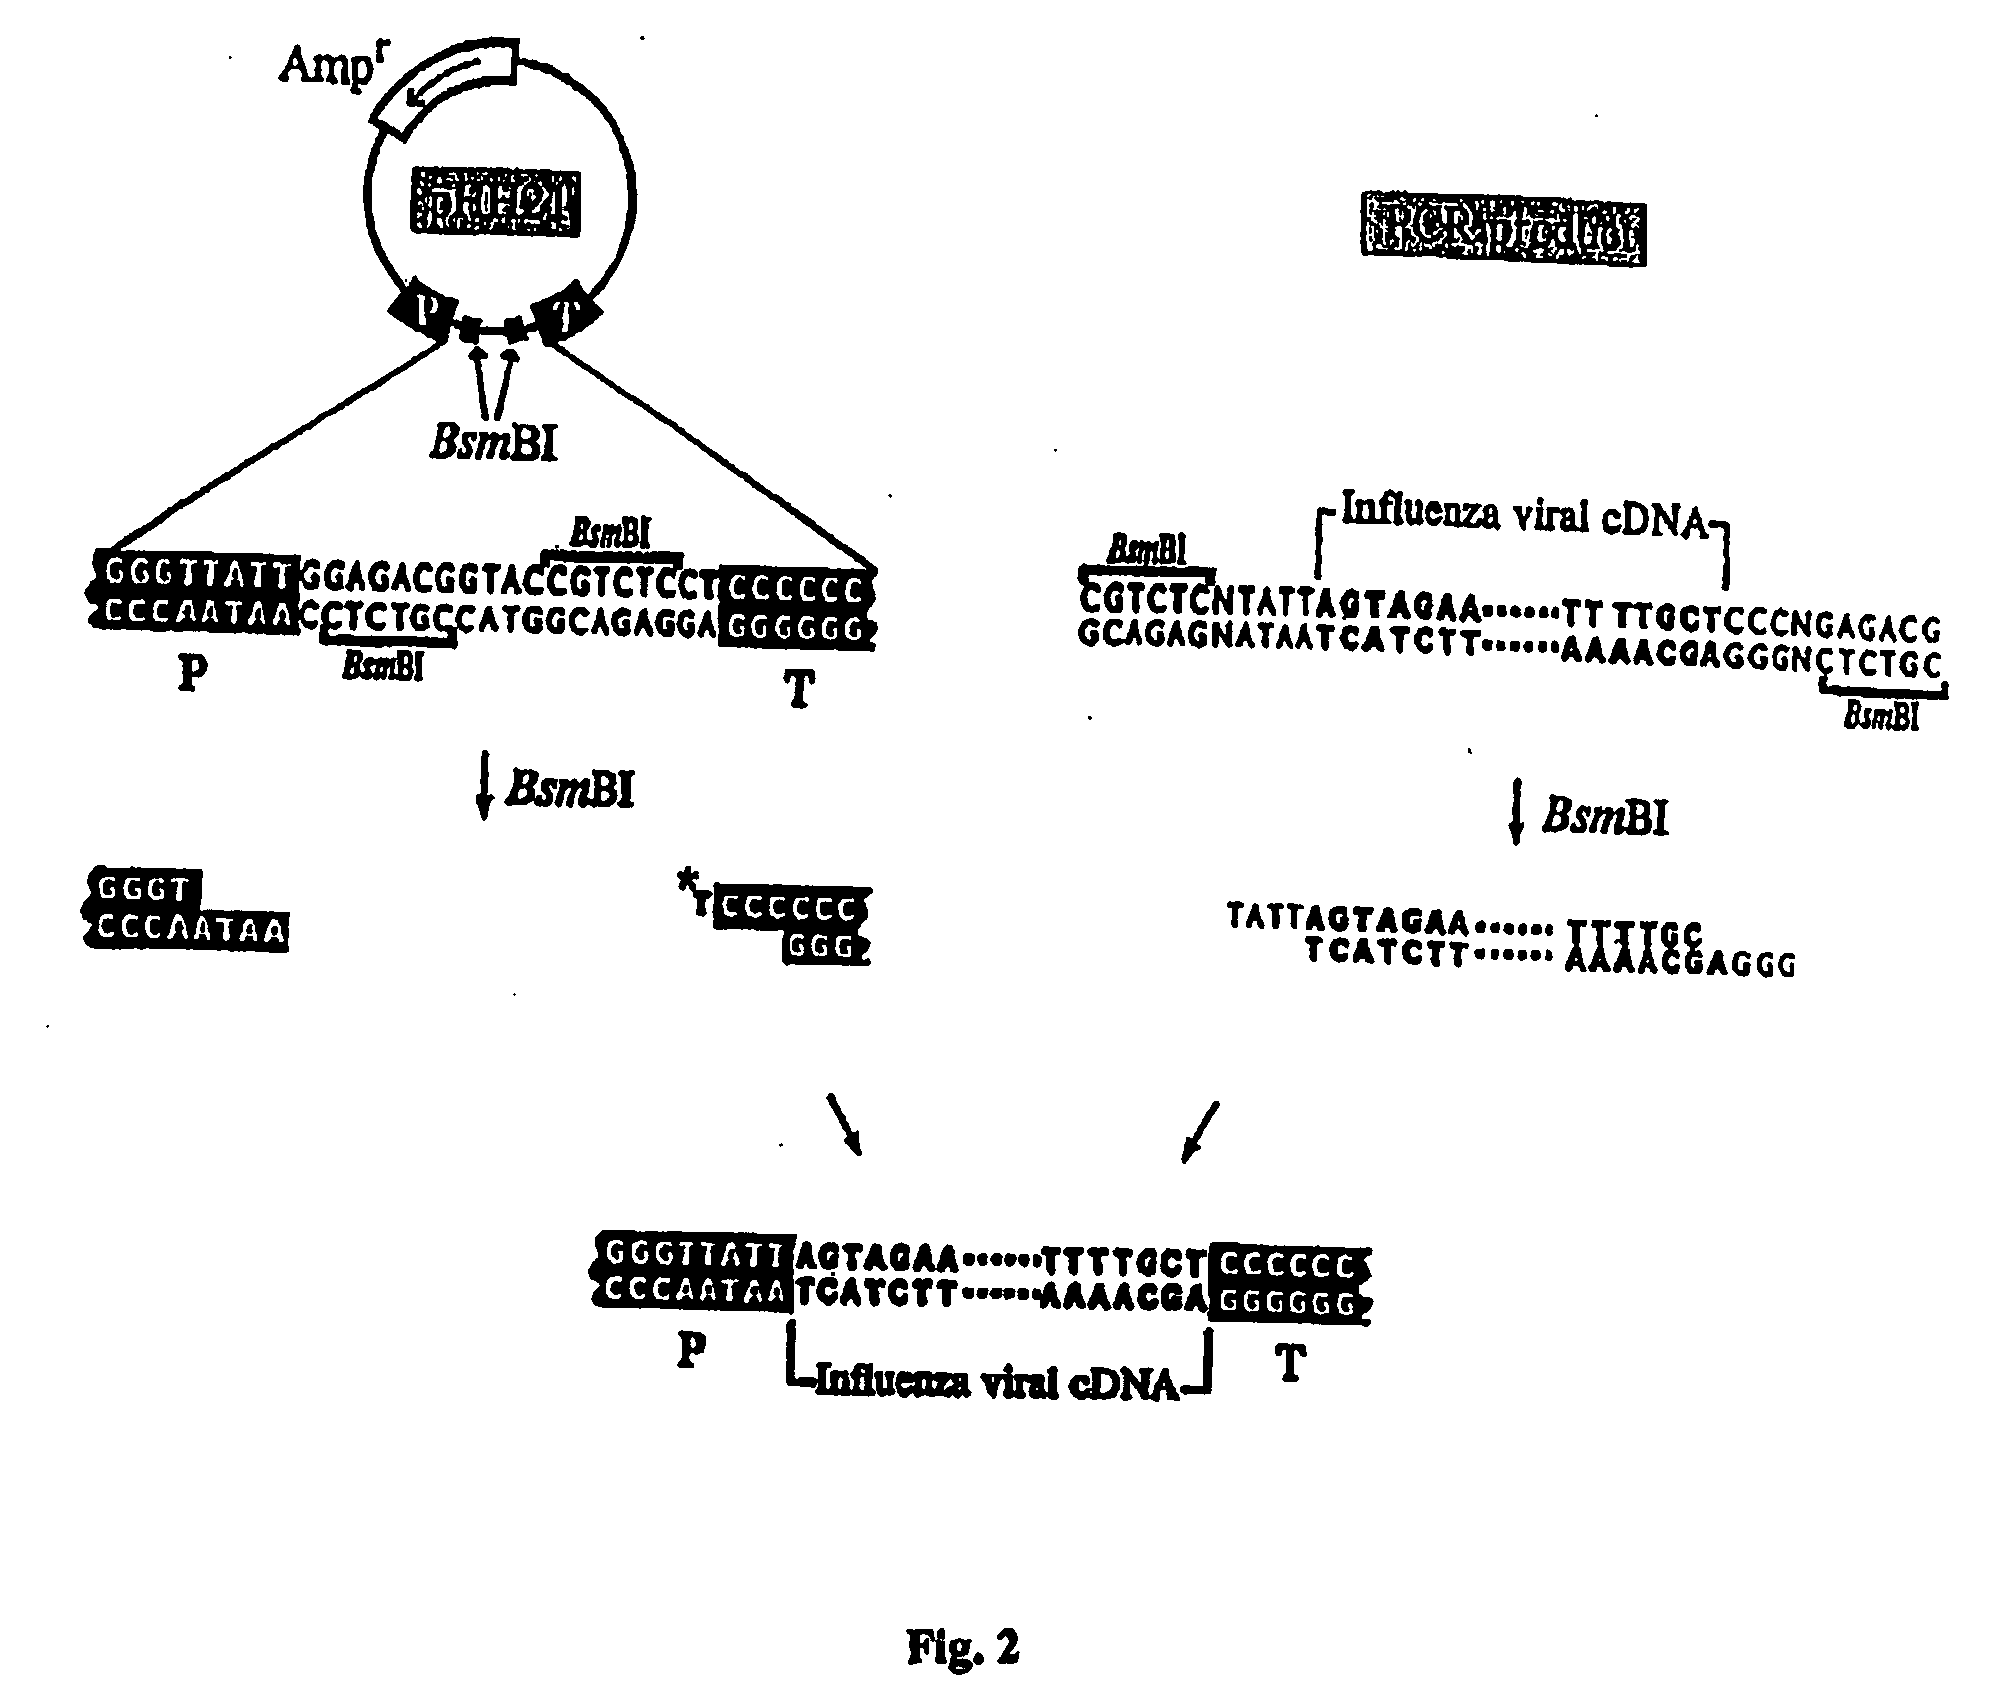 Recombinant influenza vectors with tandem transcription units